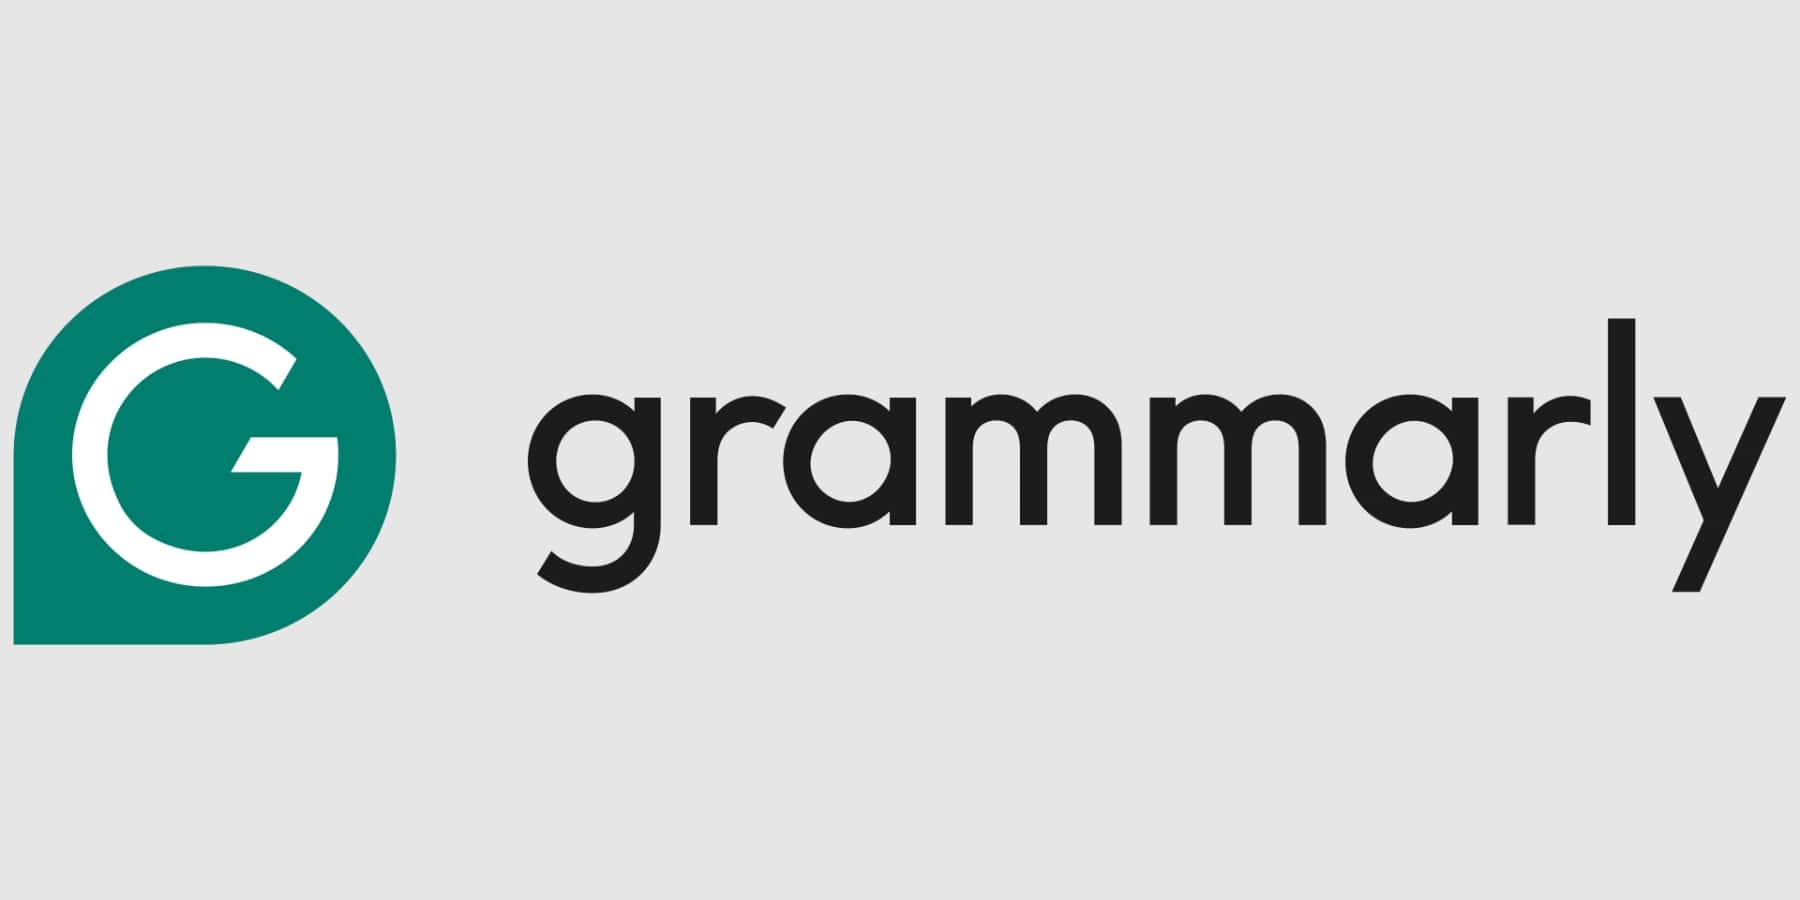 Grammatik-KI-Tools für die Bildung.